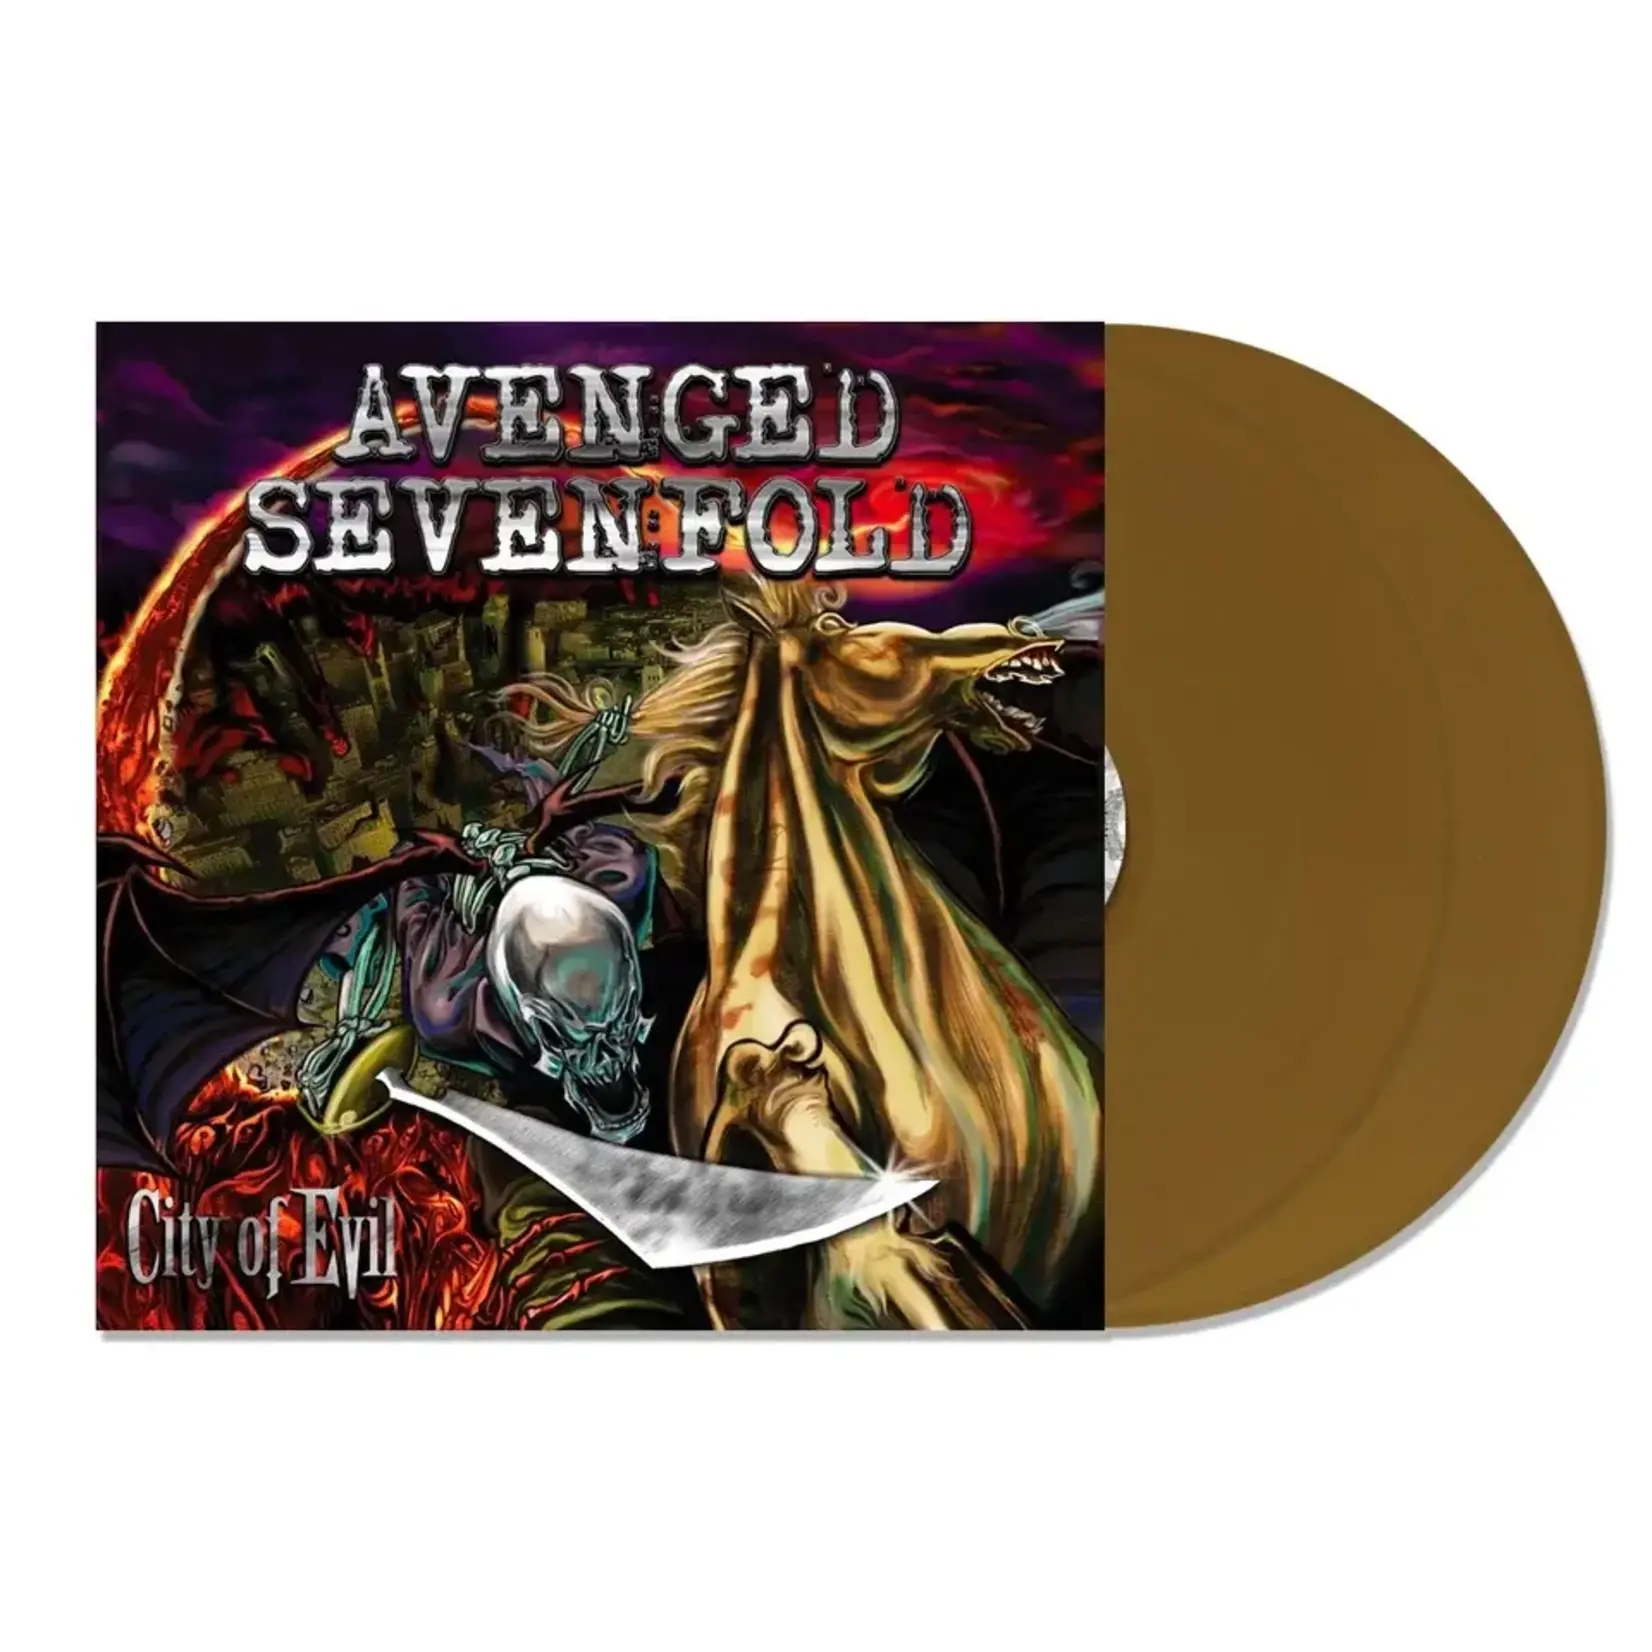 [New] Avenged Sevenfold - City Of Evil (2LP, gold vinyl)